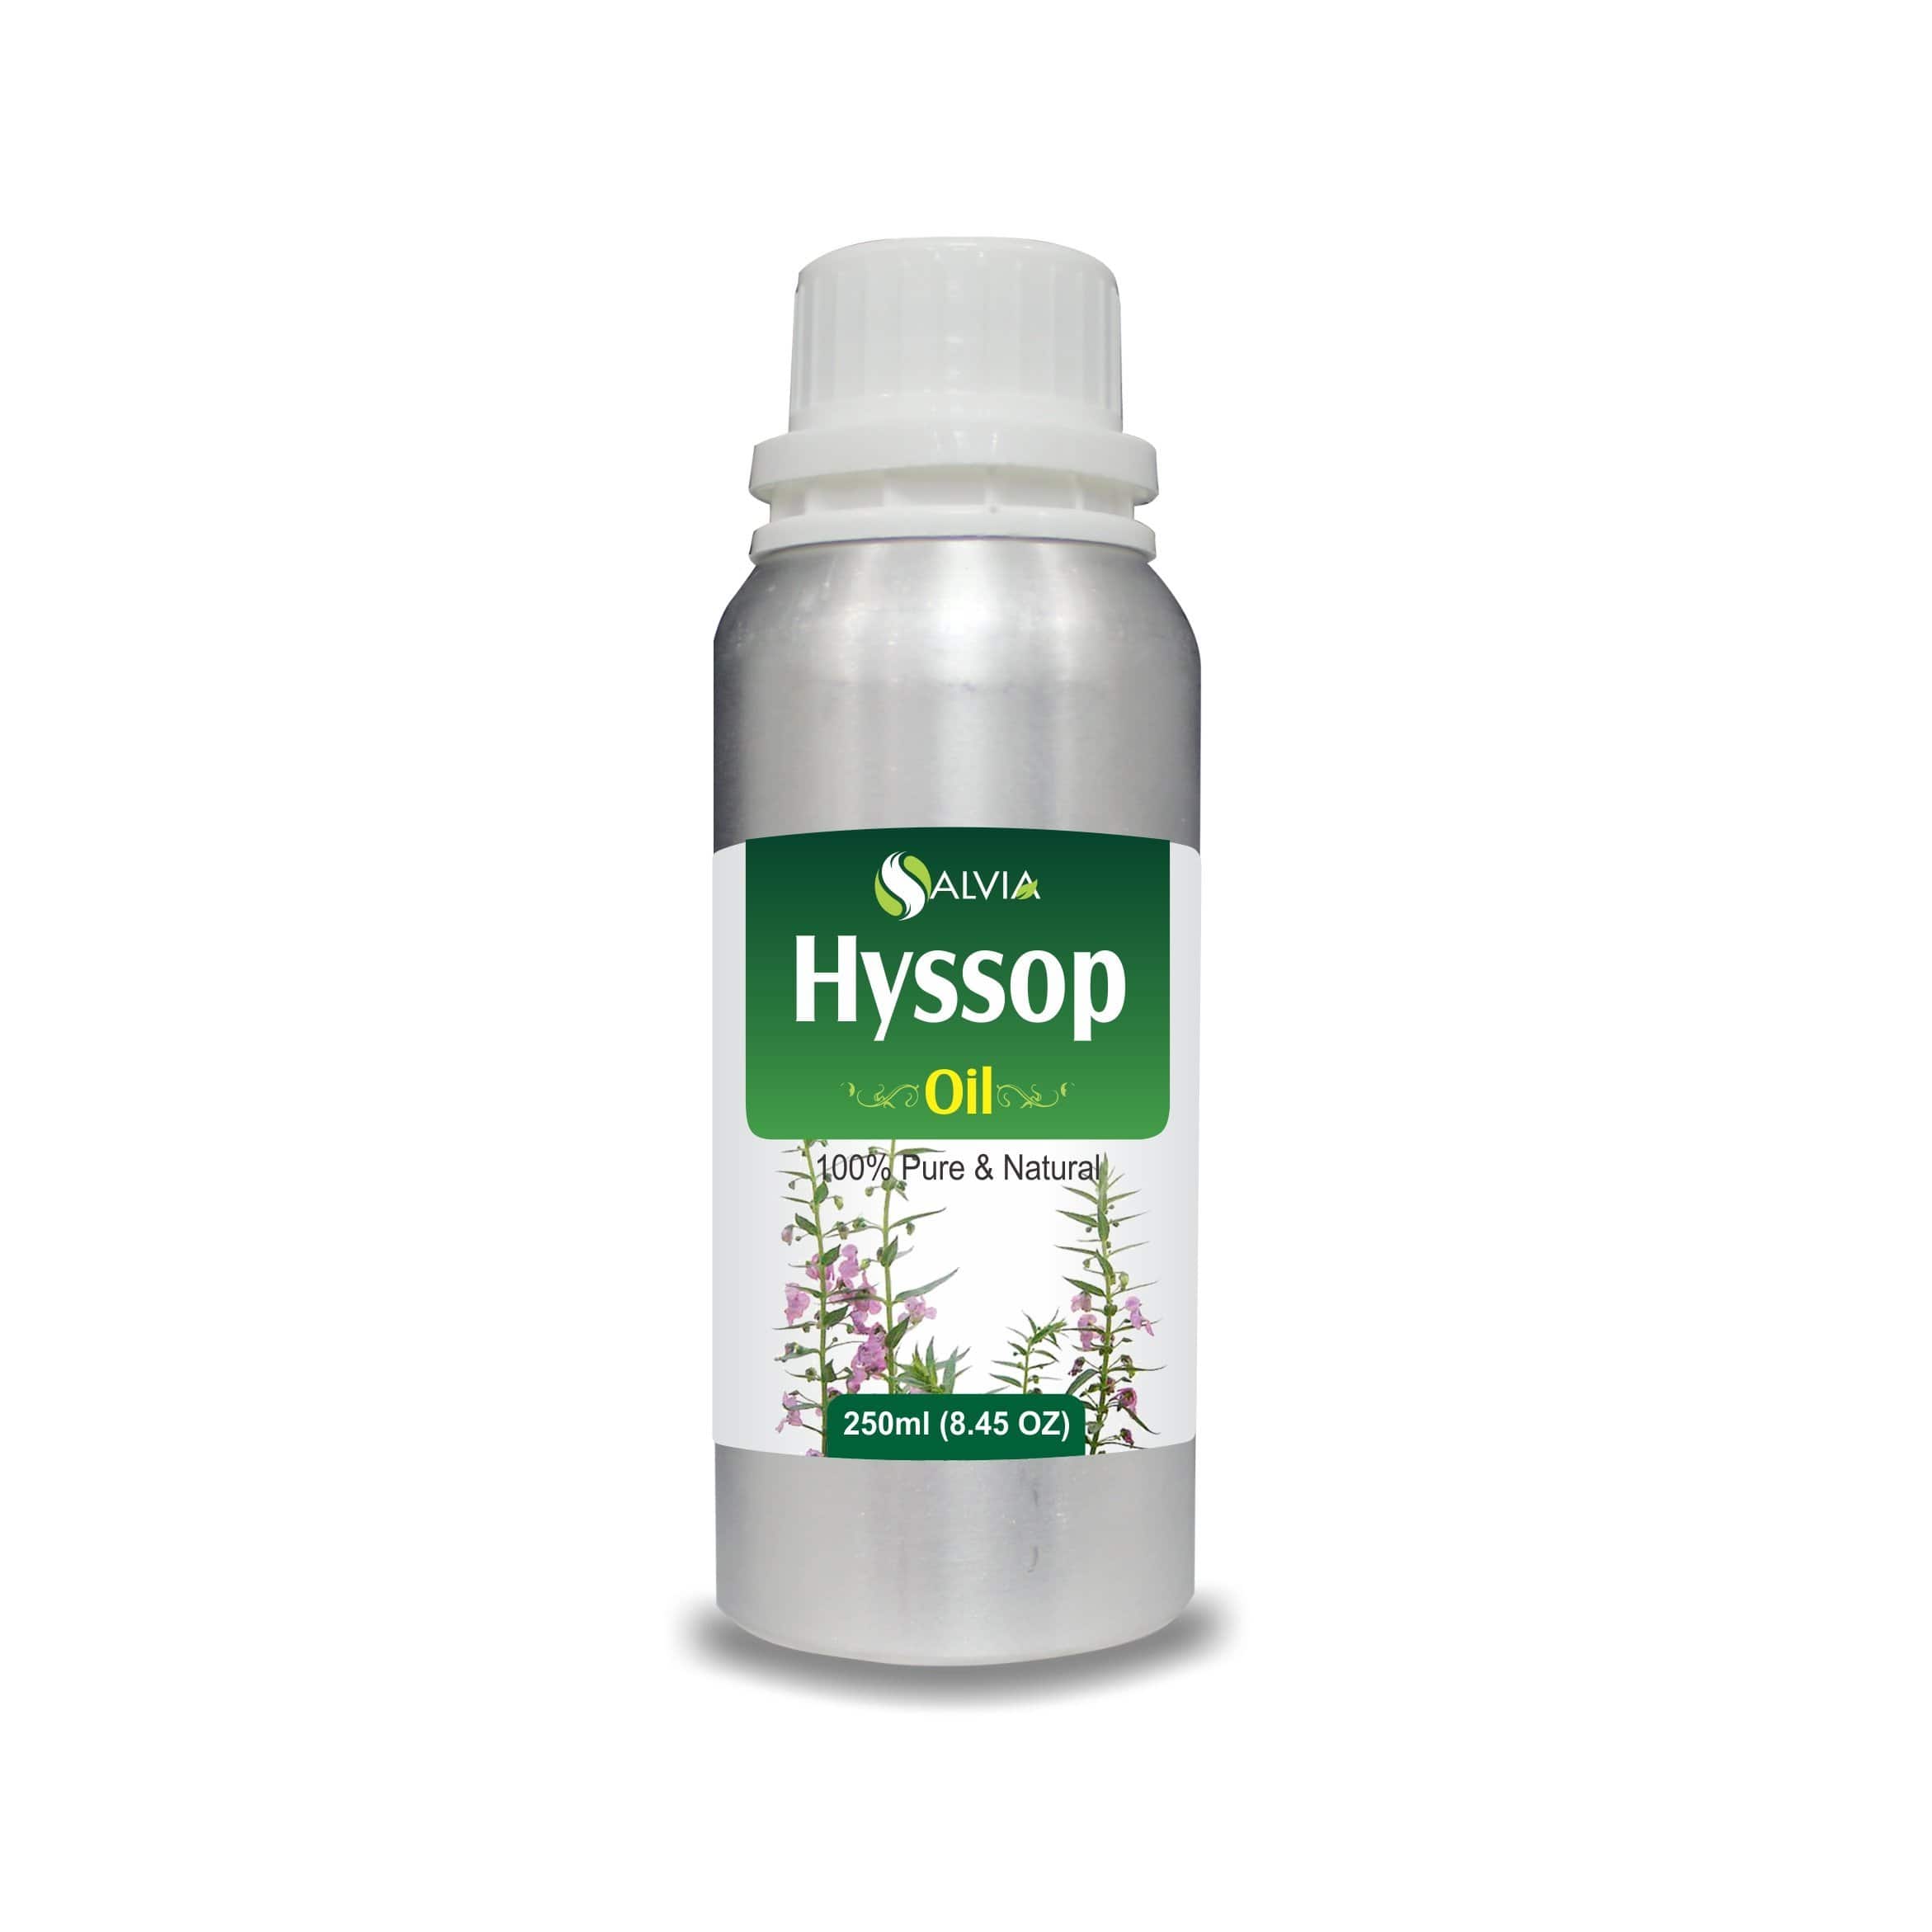 hyssop oil benefits